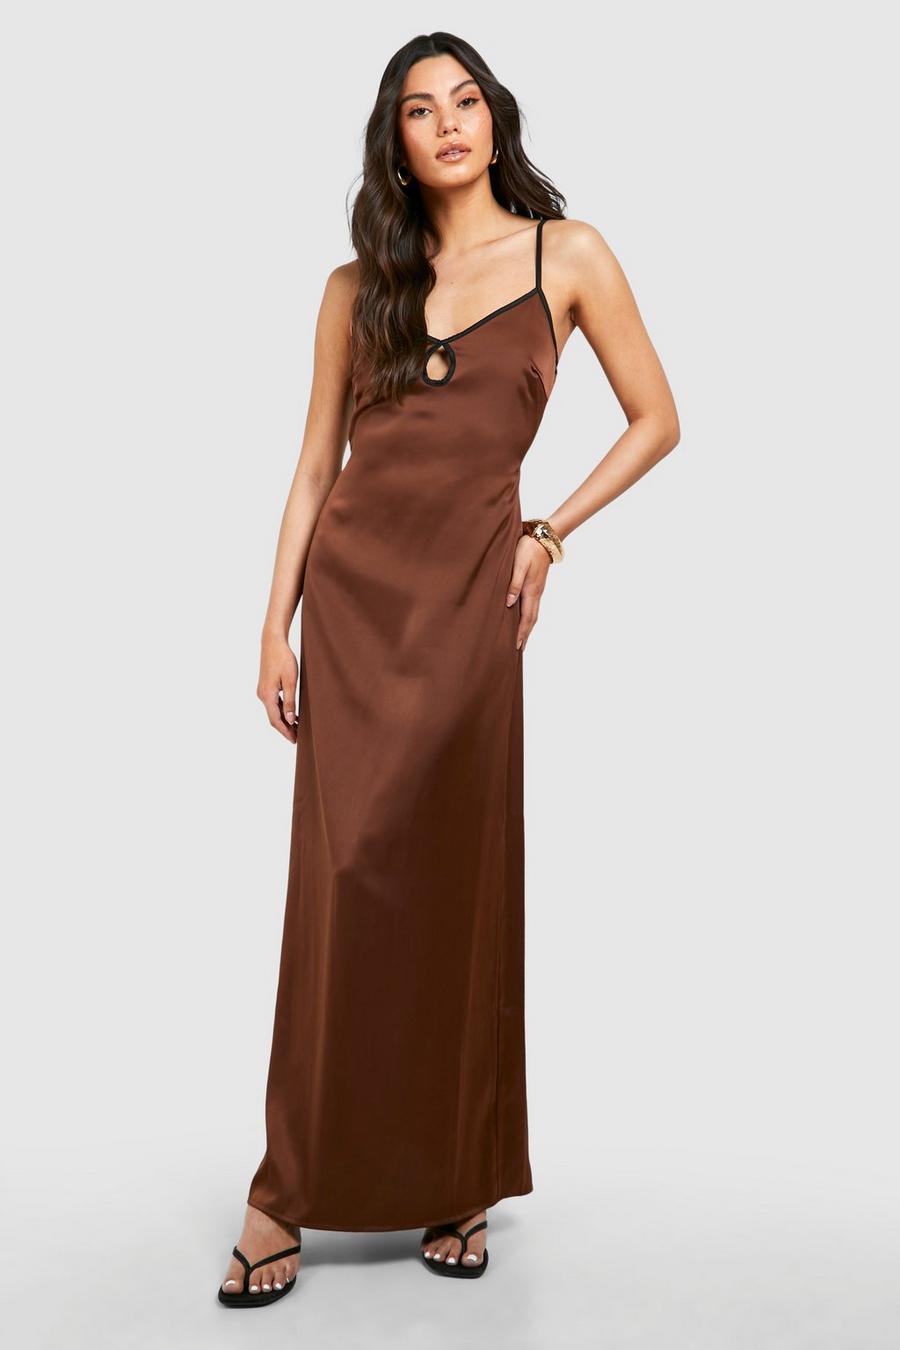 Chocolate Satin Contrast Binding Maxi Dress